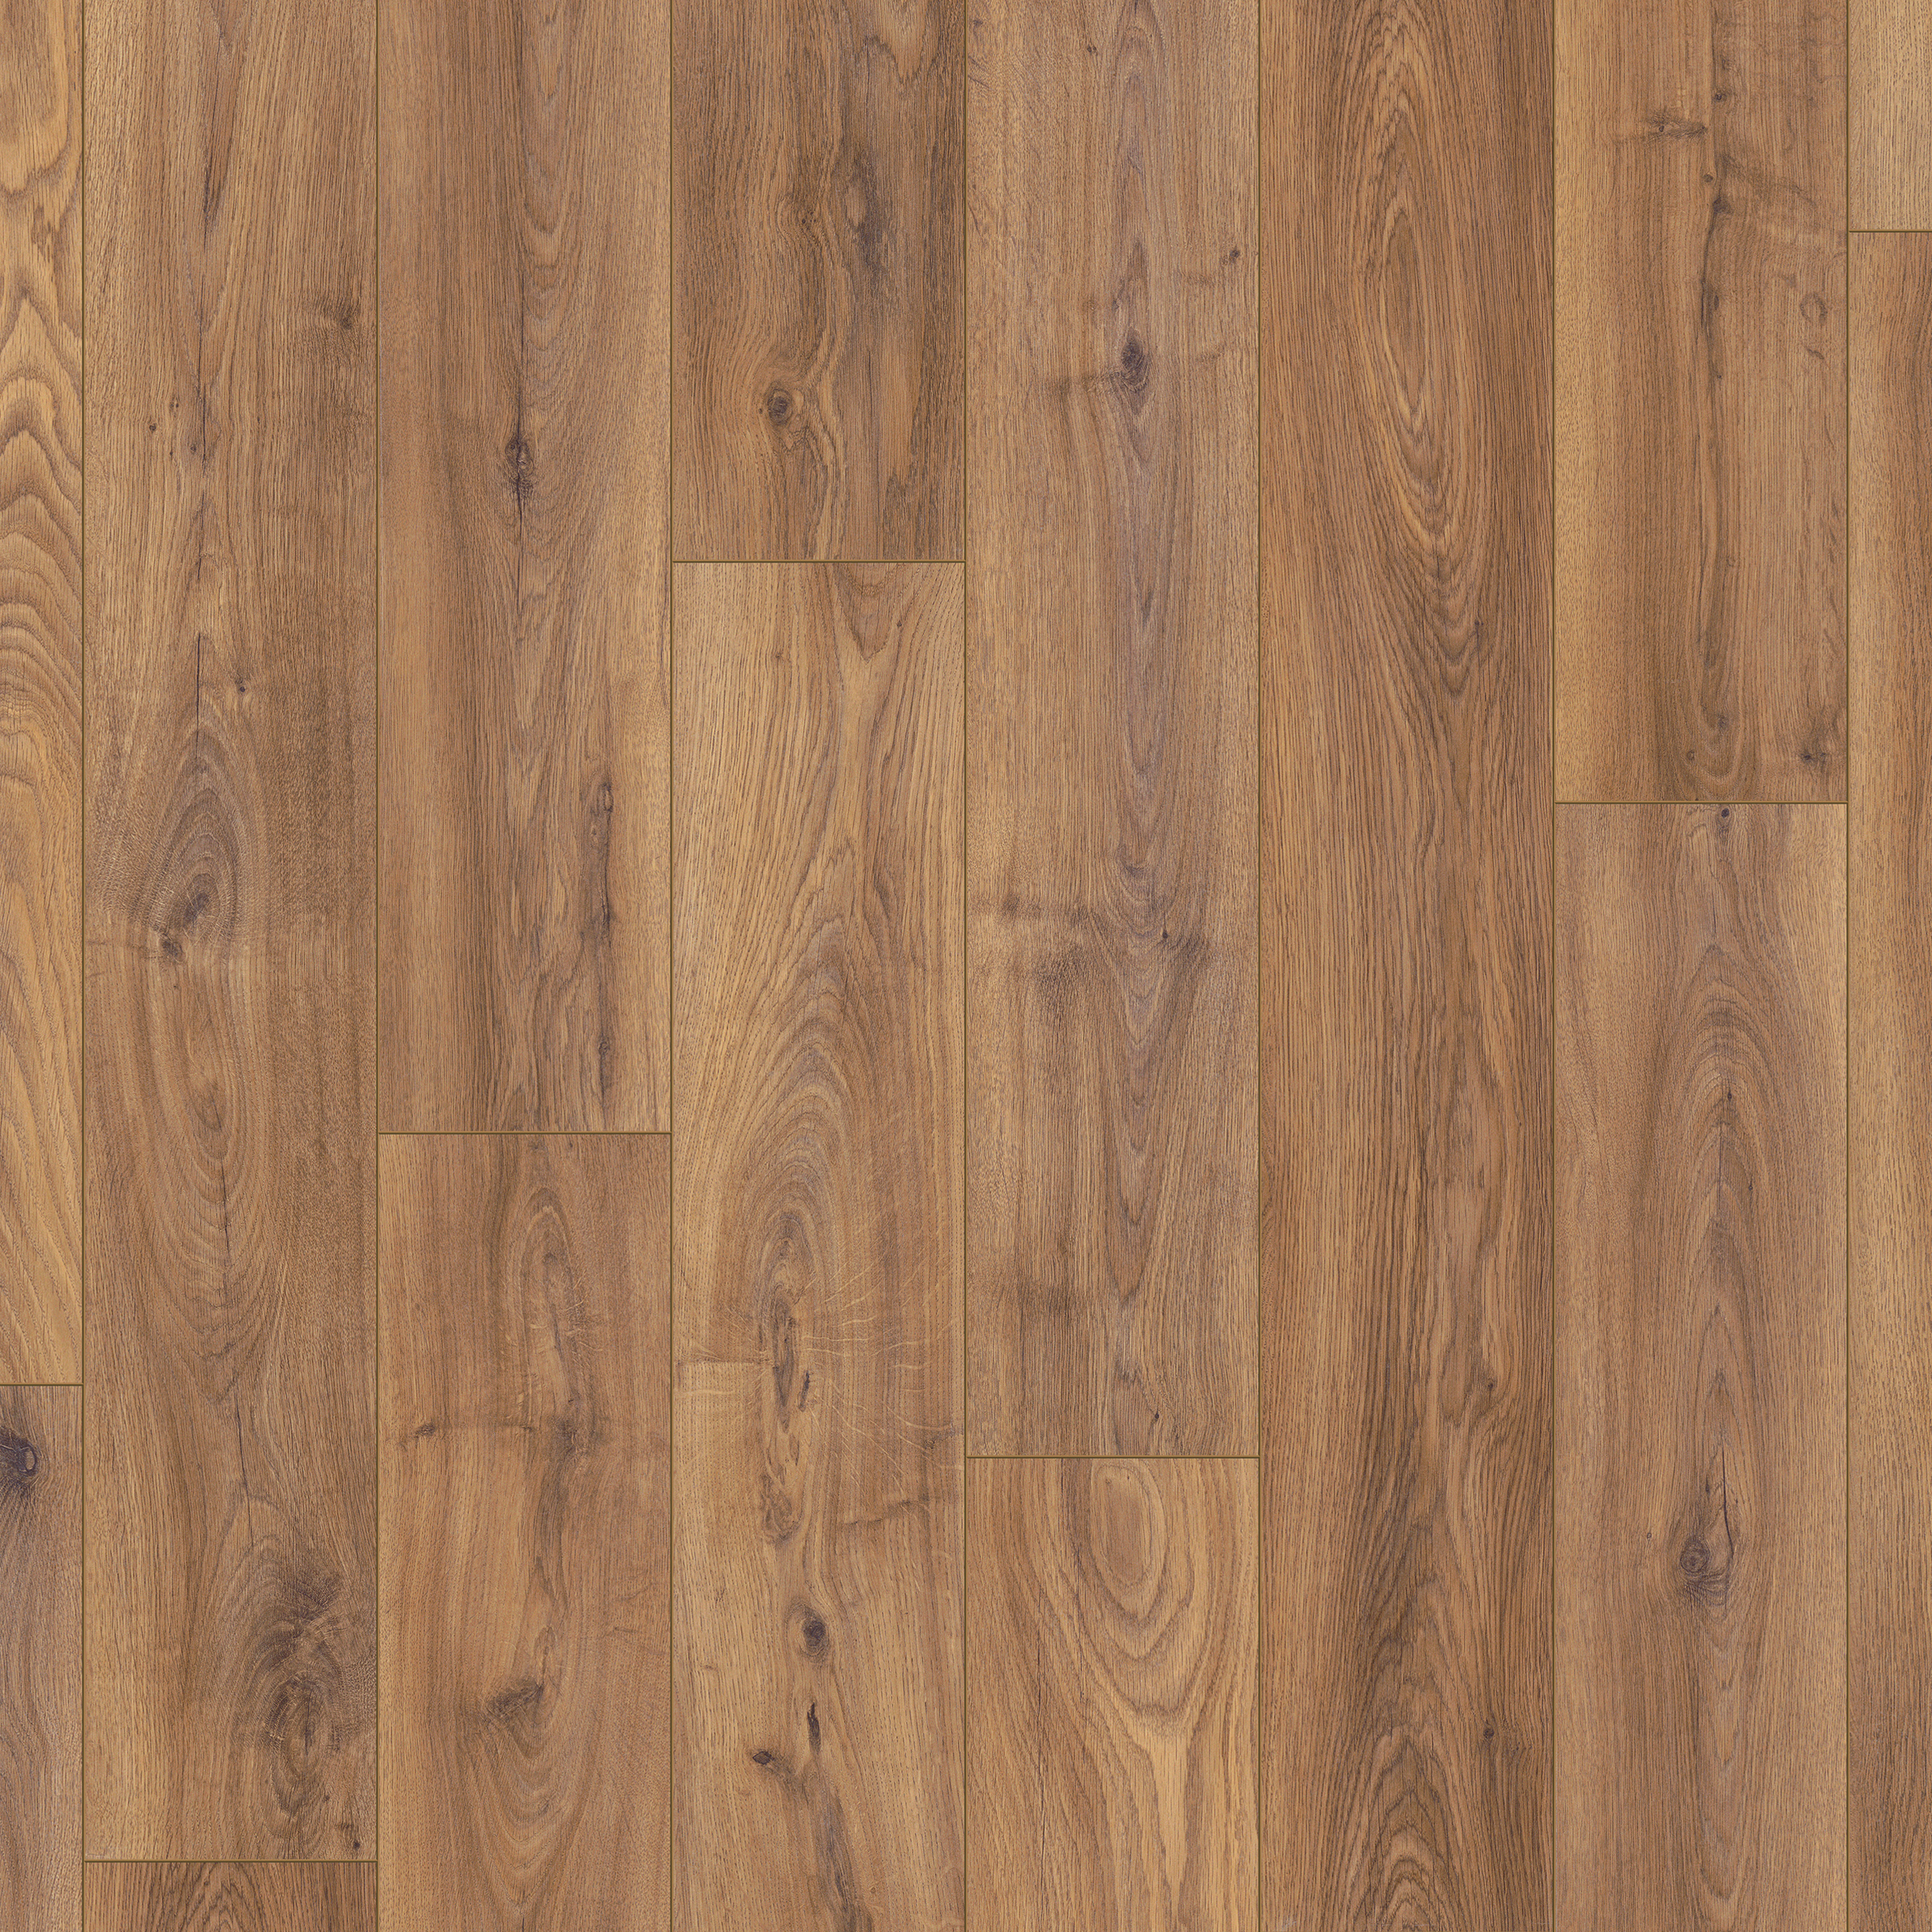 Keswick Medium Oak 12mm Laminate Flooring - 1.48m2